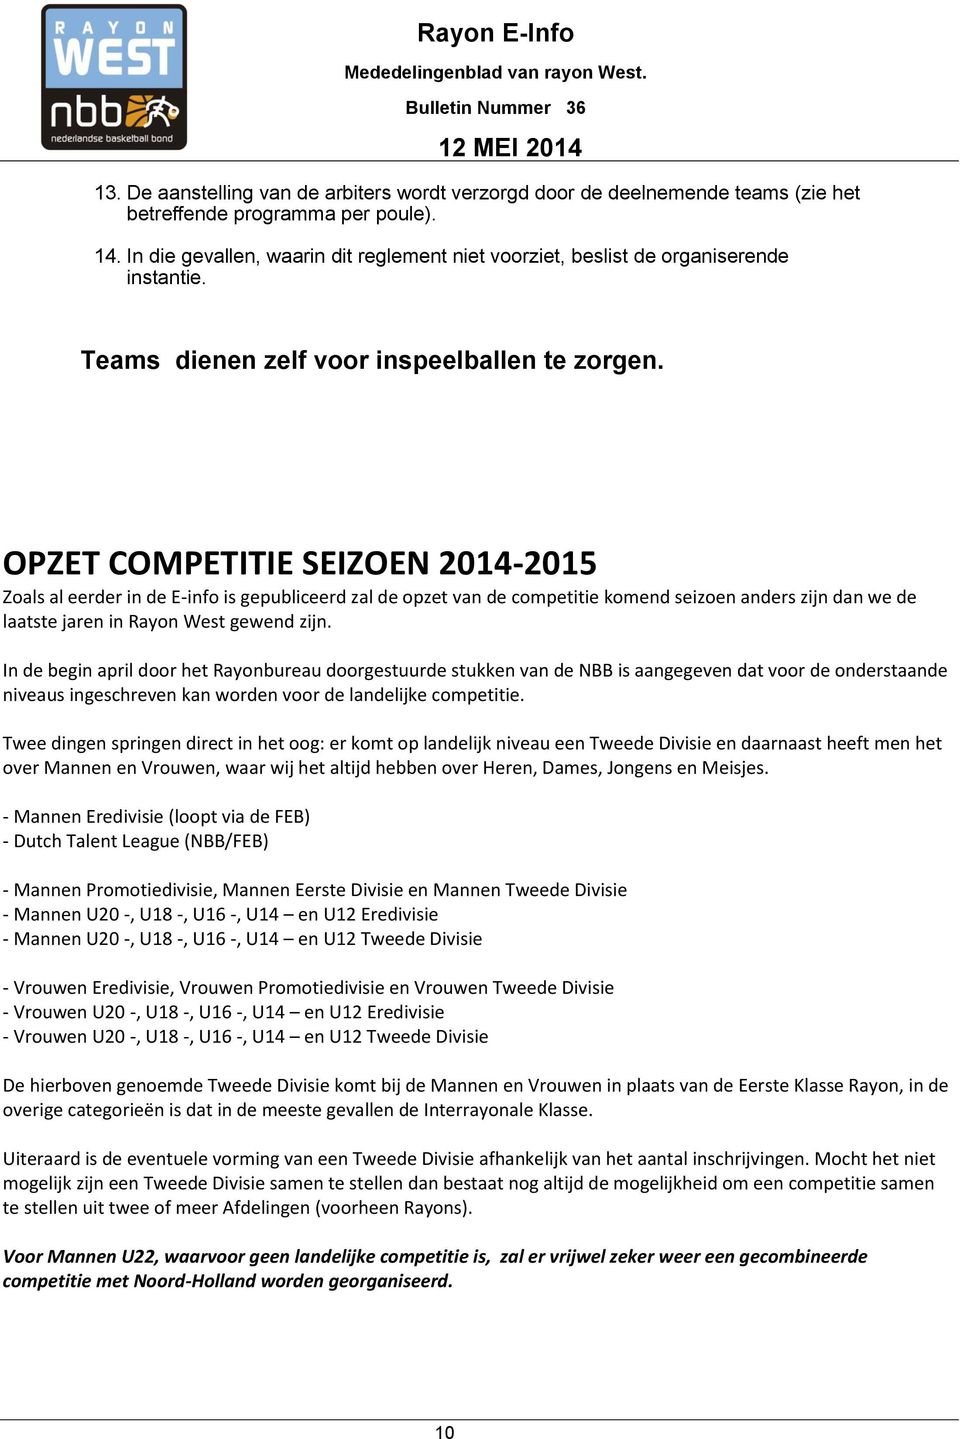 OPZET COMPETITIE SEIZOEN 2014-2015 Zoals al eerder in de E-info is gepubliceerd zal de opzet van de competitie komend seizoen anders zijn dan we de laatste jaren in Rayon West gewend zijn.